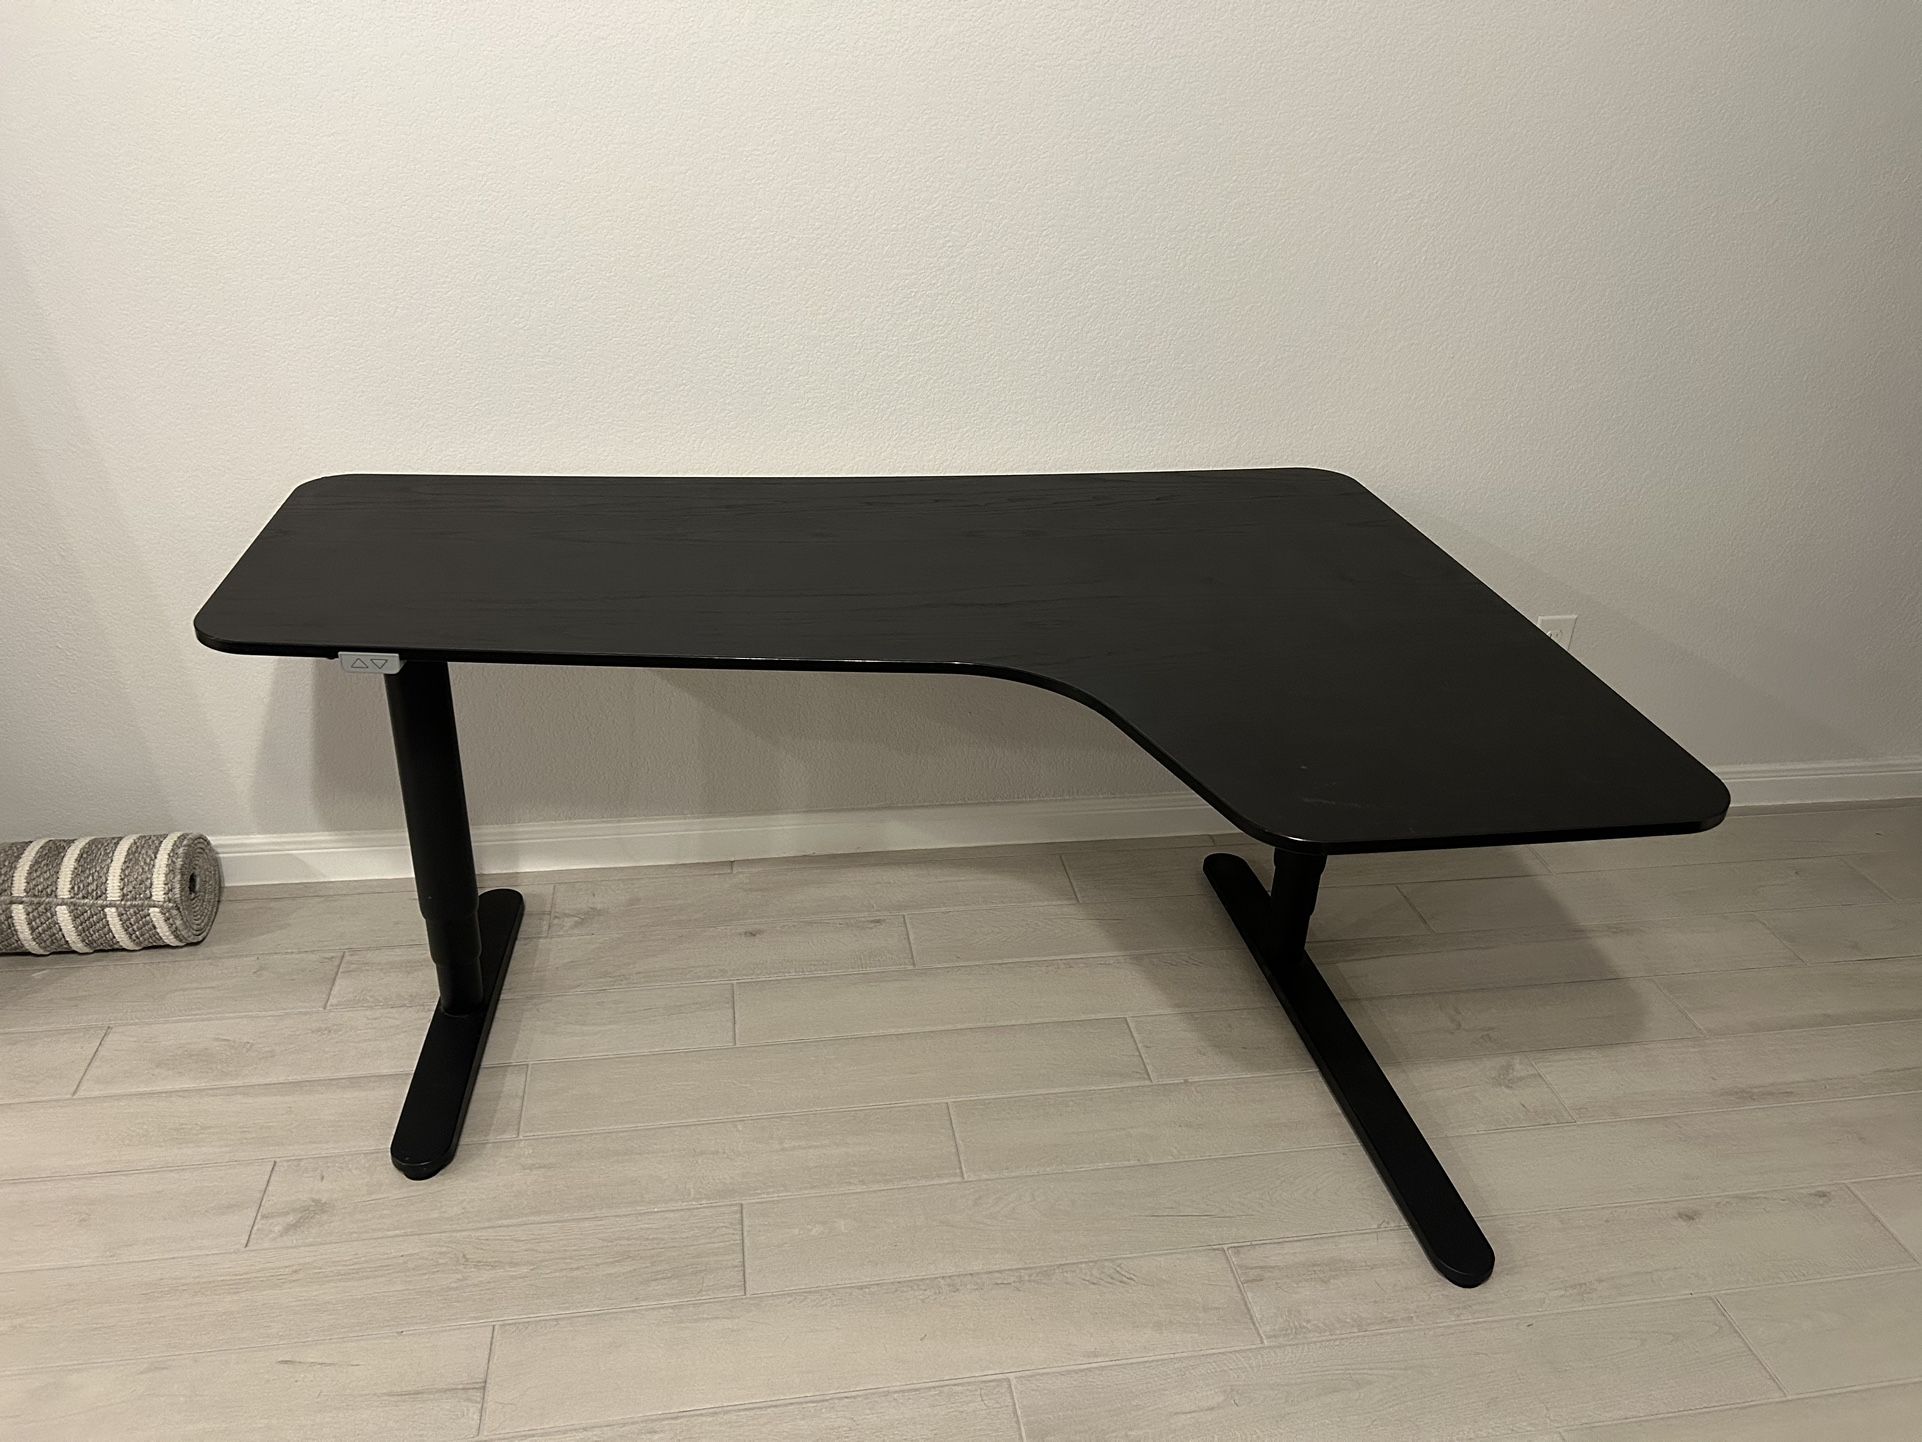 L Shaped adjustable desk